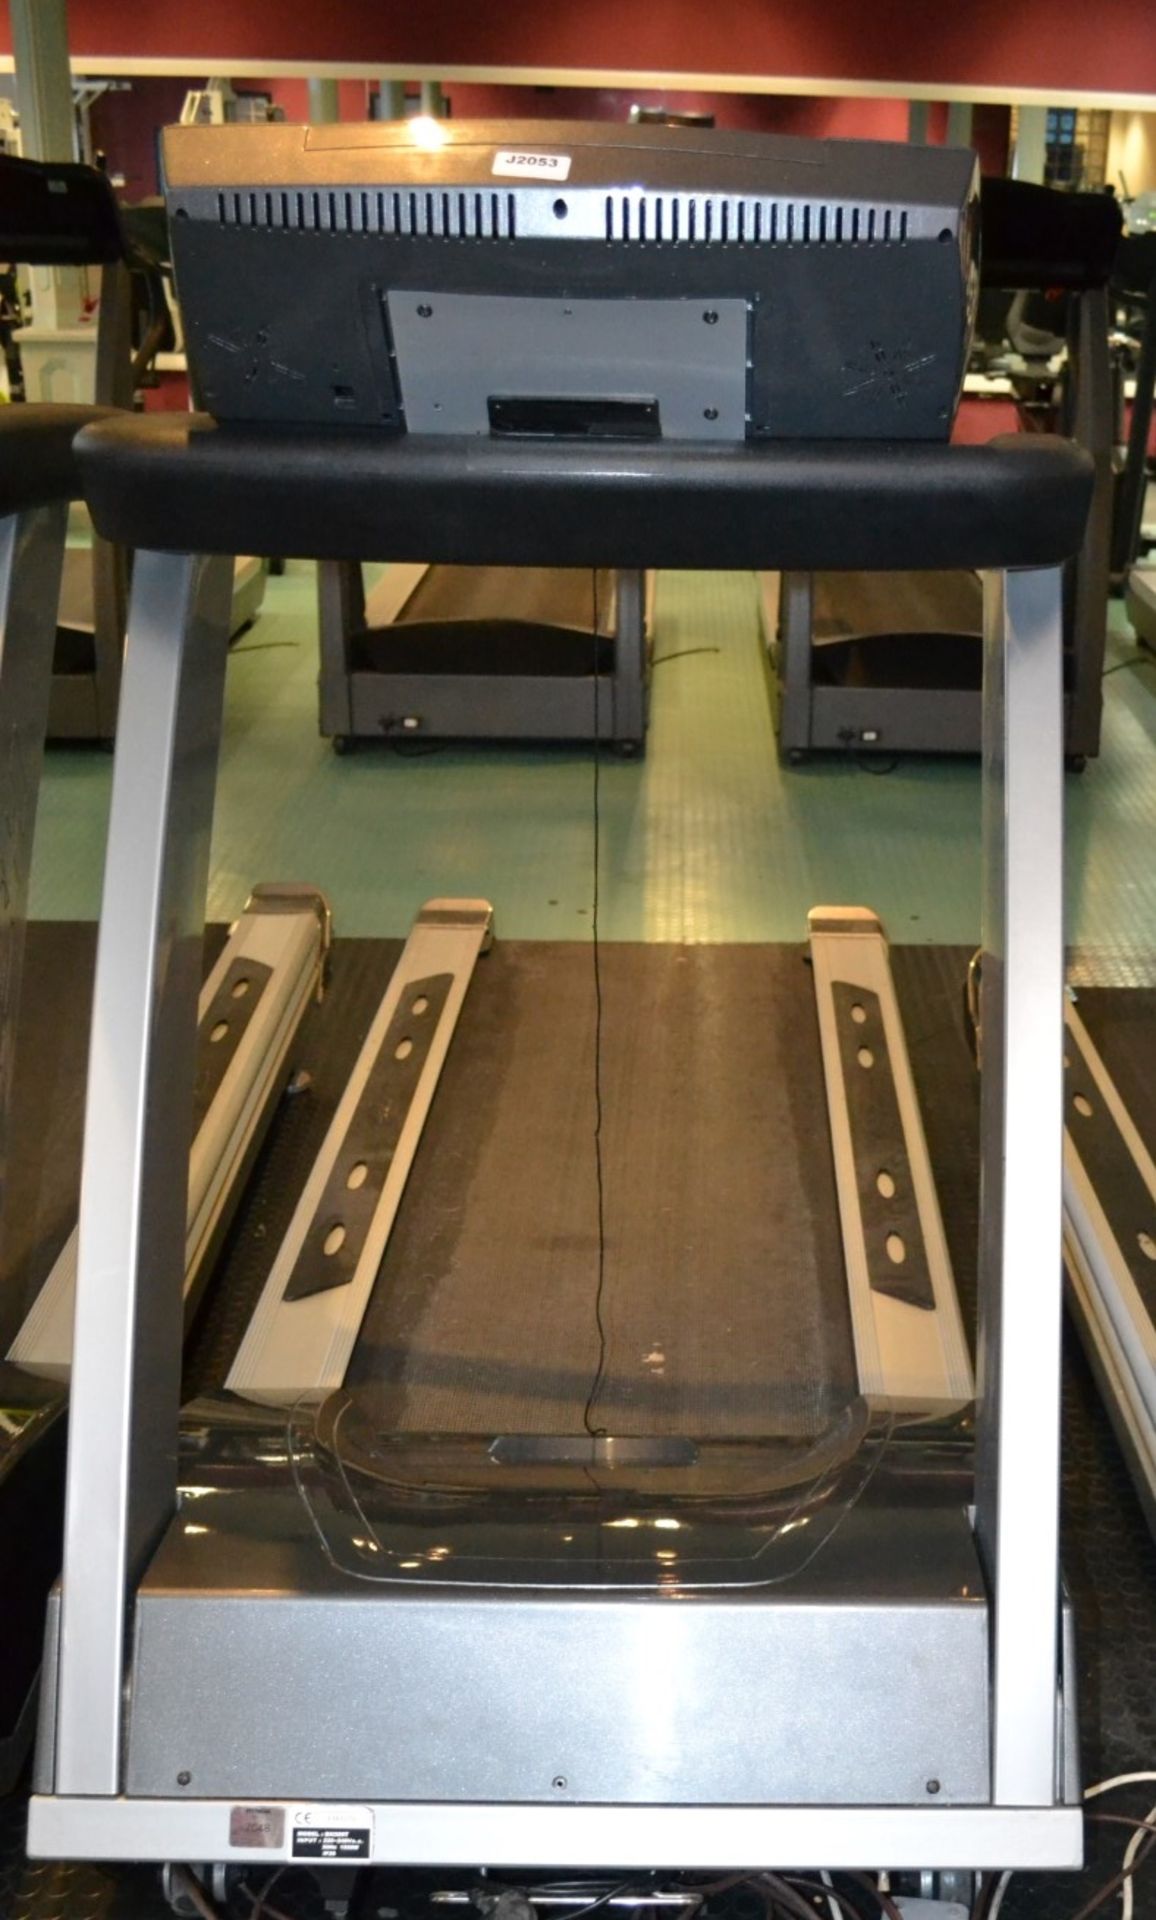 1 x BH Fitness Treadmill Model BH 300T - Dimensions: L230 x H150 x W82cm - Ref: J2053/1FG - - Image 2 of 3